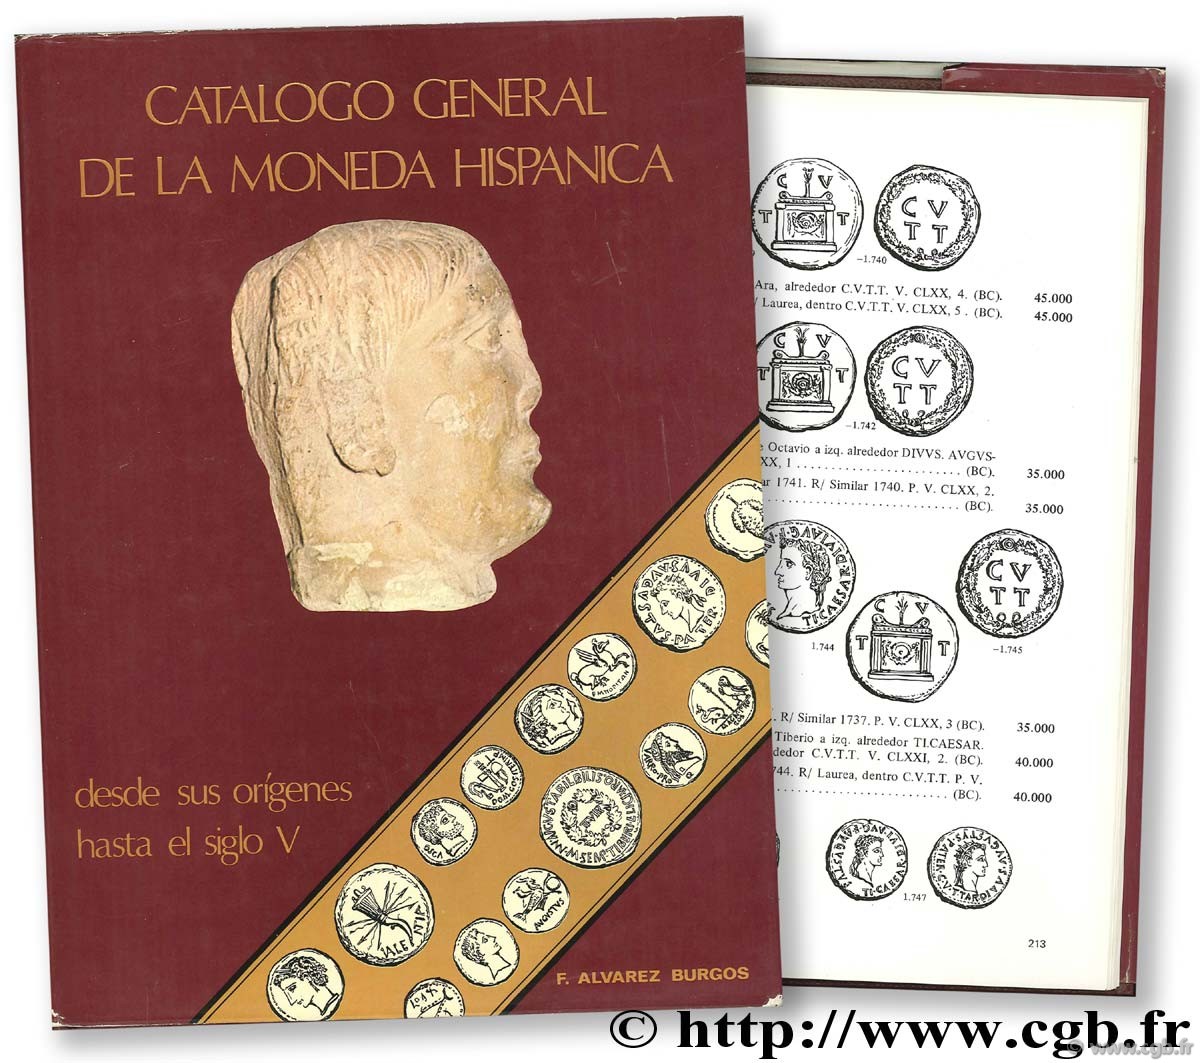 Catalogo General de la Moneda Hispanica desde sus origines hasta el siglo V ALAVREZ BURGOS F.